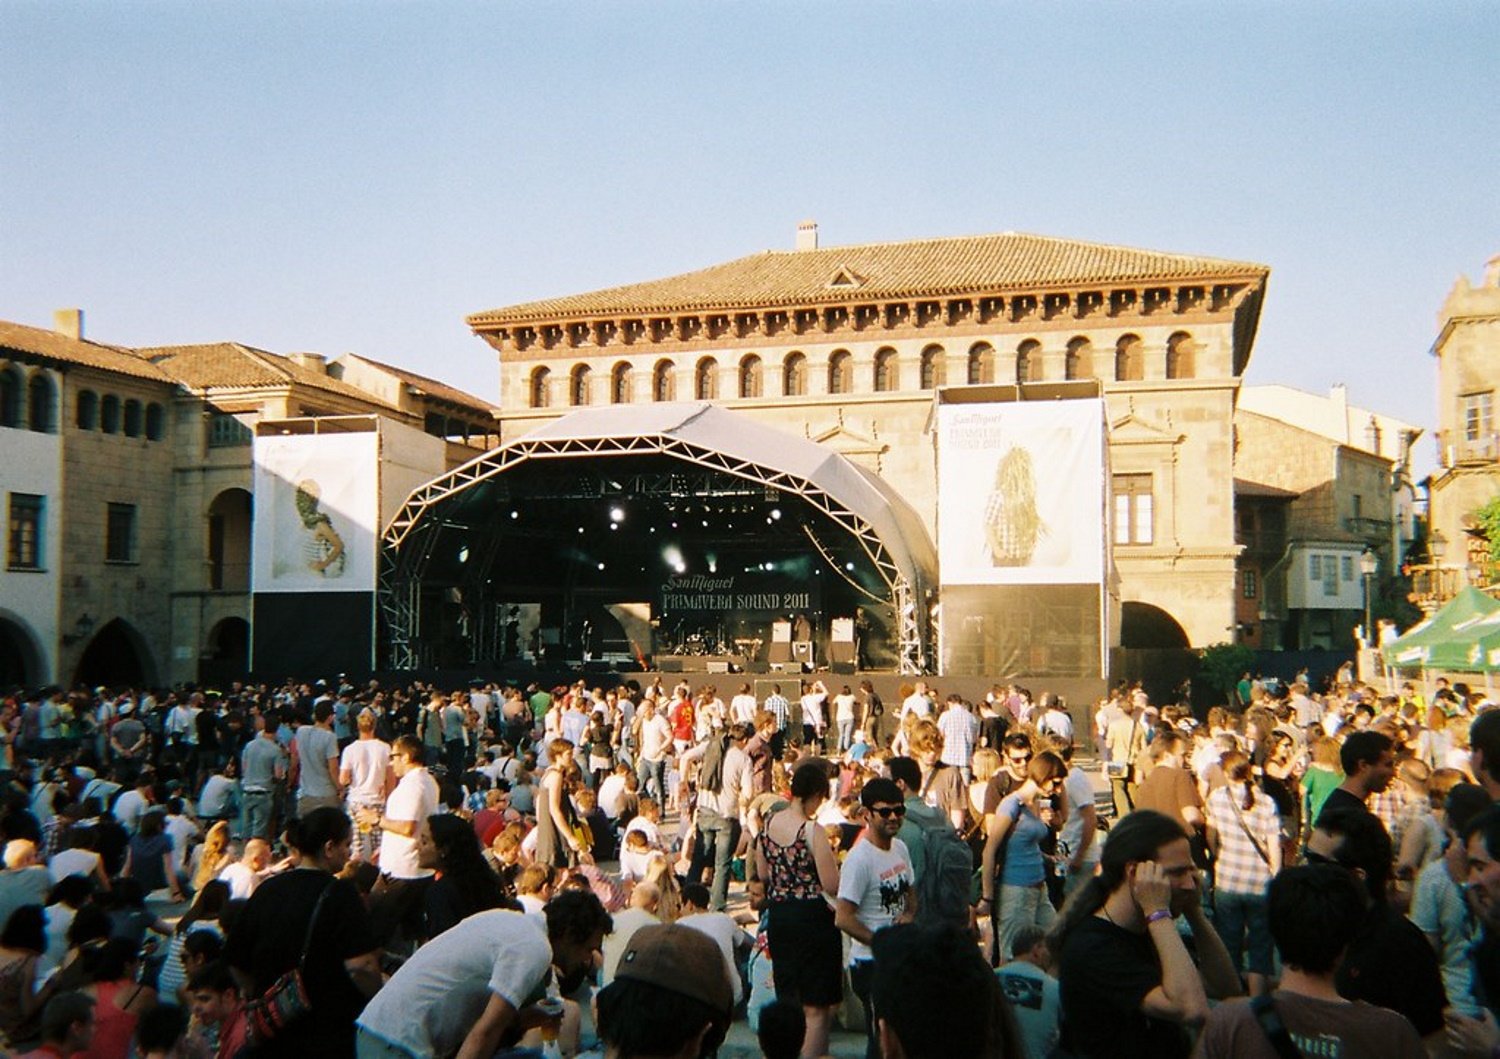 20 anys del Primavera Sound: 5 curiositats del festival més gran de Barcelona